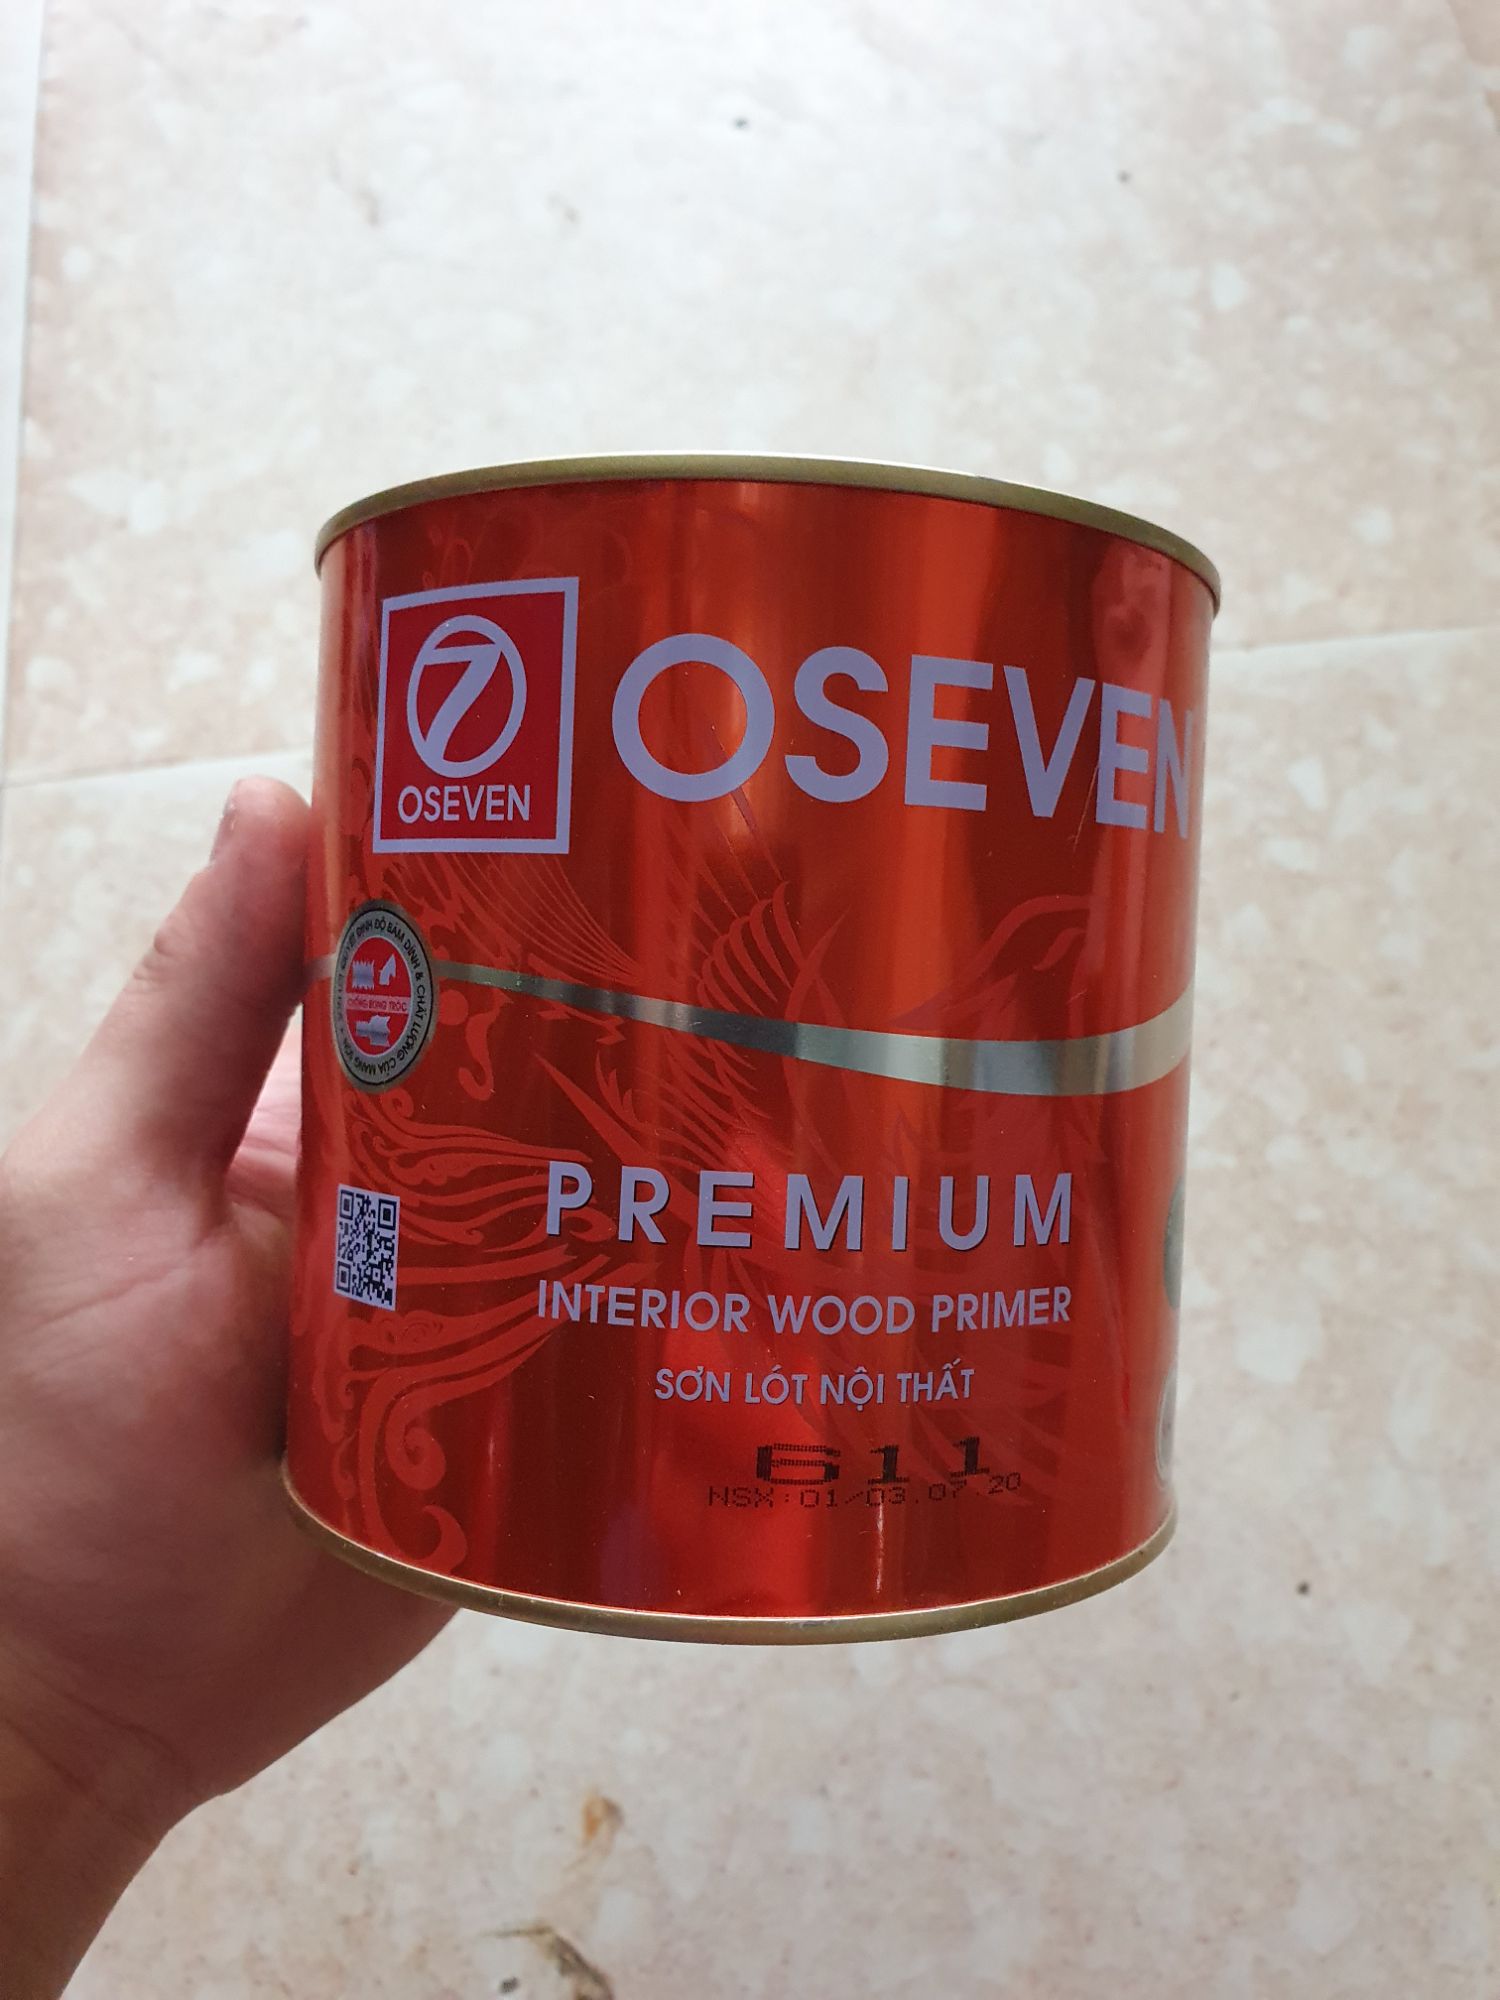 Sơn lót Oseven là sản phẩm chuyên dụng để chuẩn bị cho bề mặt gỗ trước khi sơn. Không chỉ giảm thiểu lỗi sơn, sản phẩm còn bảo vệ bề mặt gỗ khỏi mối mọt và chống thấm nước hiệu quả. Hãy xem hình ảnh sản phẩm để hiểu rõ hơn về công dụng của sơn lót Oseven.